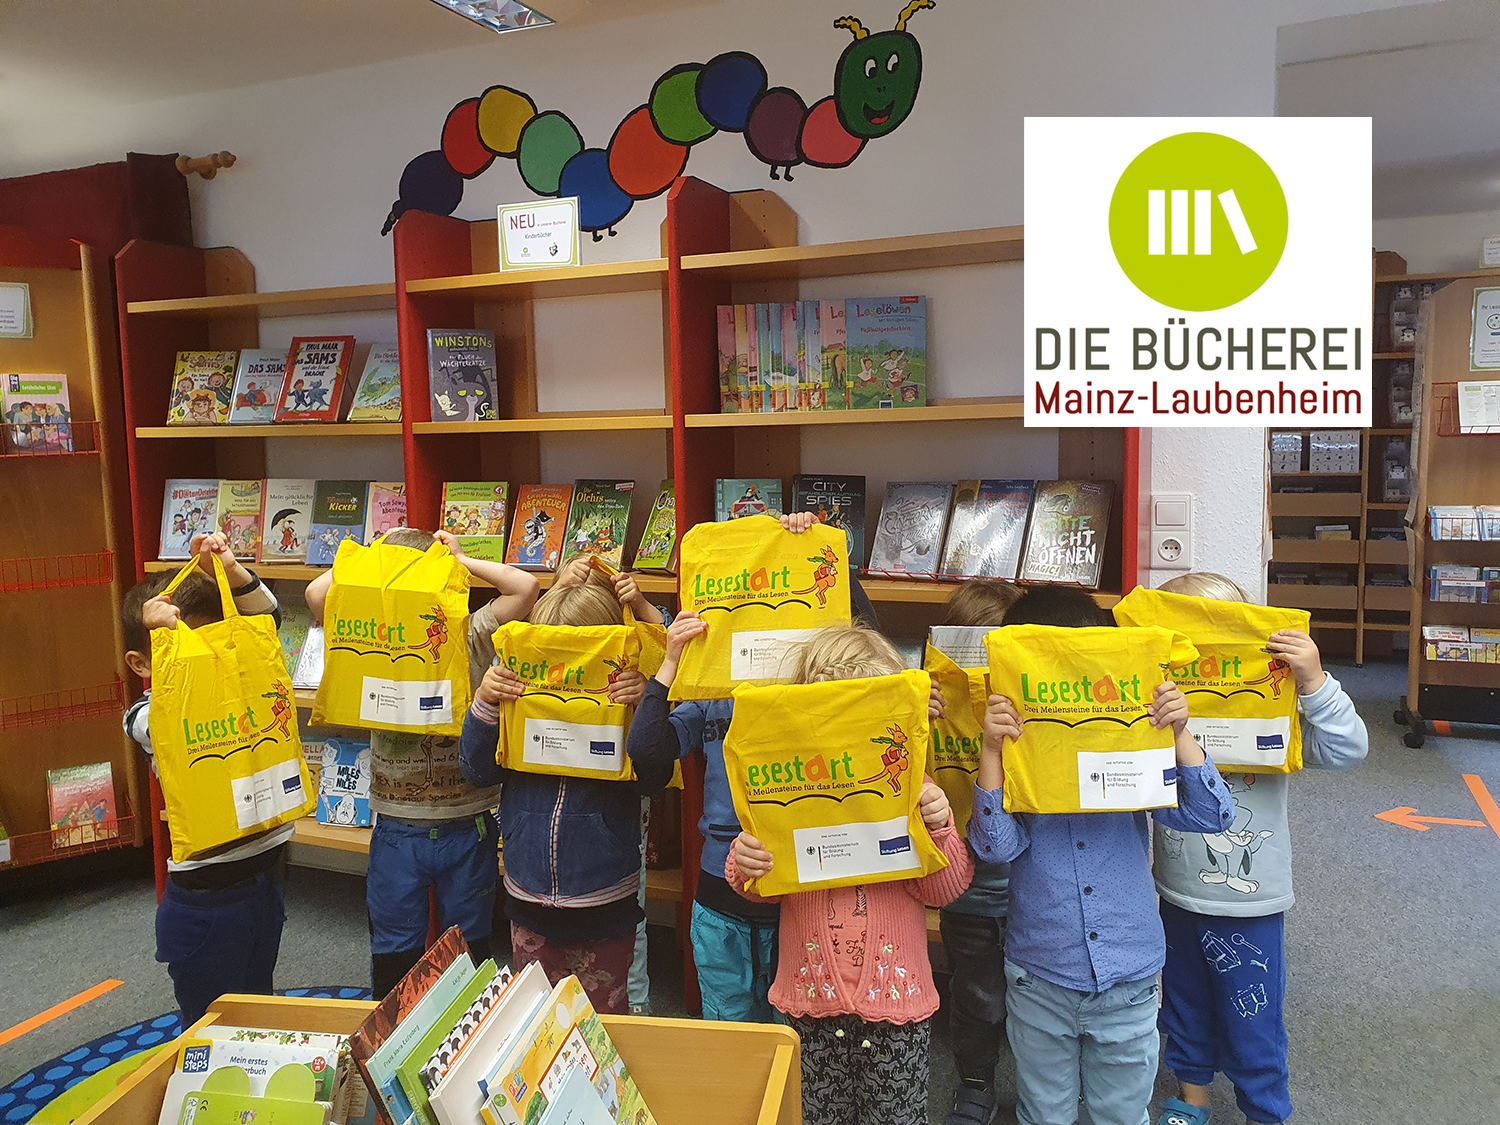 Jedes Kind erhielt eine Lesestart-Tasche mit einem Bilderbuch geschenkt. (c) Die Bücherei Mainz-Laubenheim